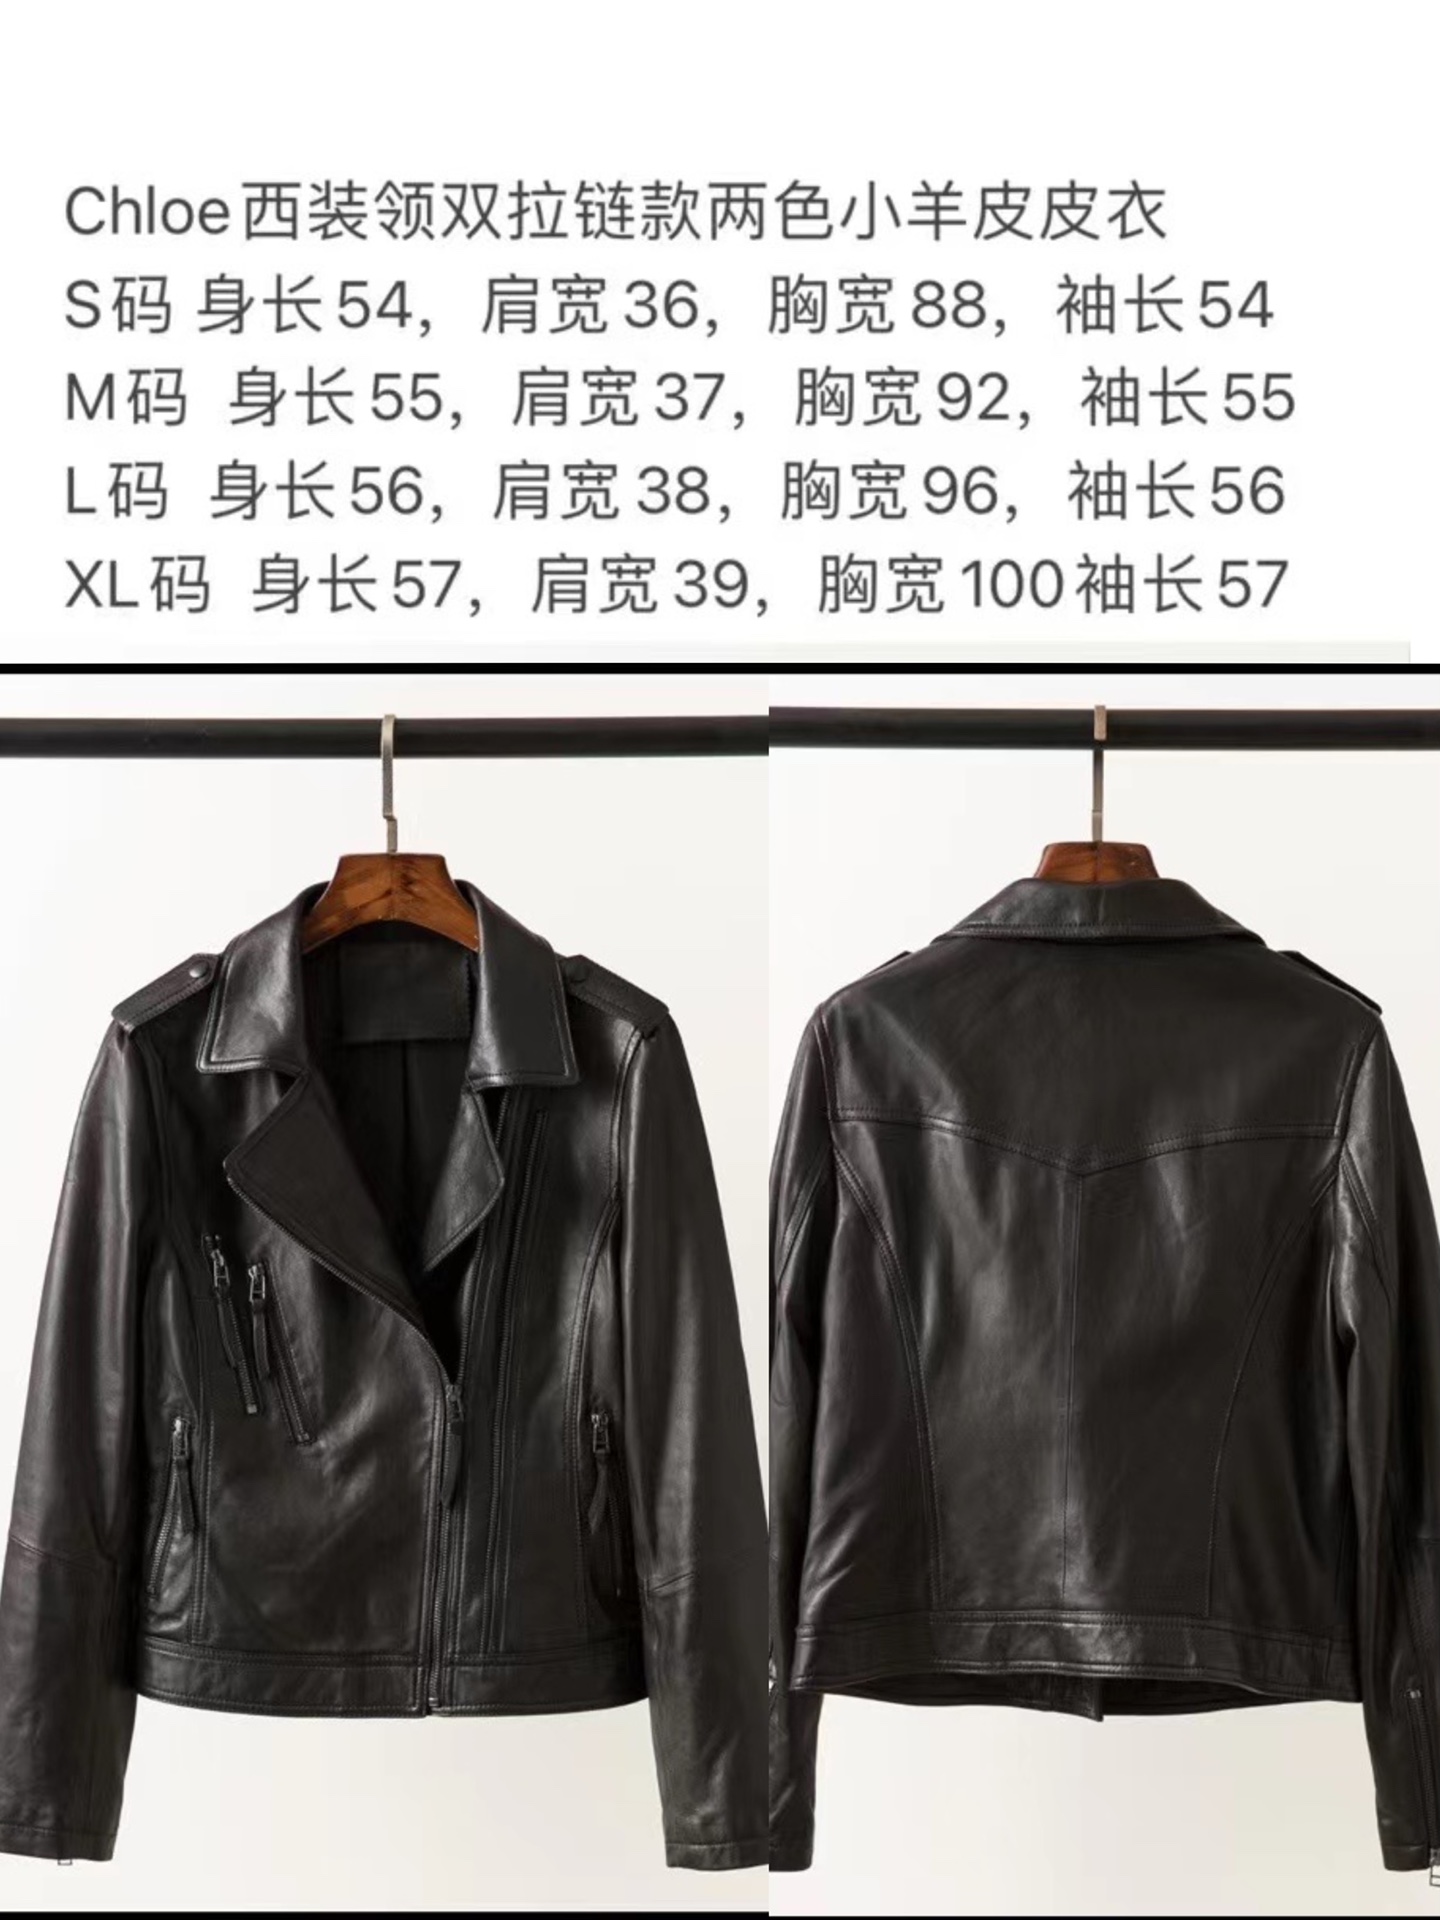 chloe新款皮衣西装，选用进口新西兰绵羊皮，皮质超级细腻 光泽感十足，这款双拉链设计给人独特，又惊喜的感觉，简直是吸金满满又高级 。版型很正又帅气的西装皮衣撸上身就不想脱下来的感觉 爱了 爱了  。颜色：黑色、码数：S/M/L/XL